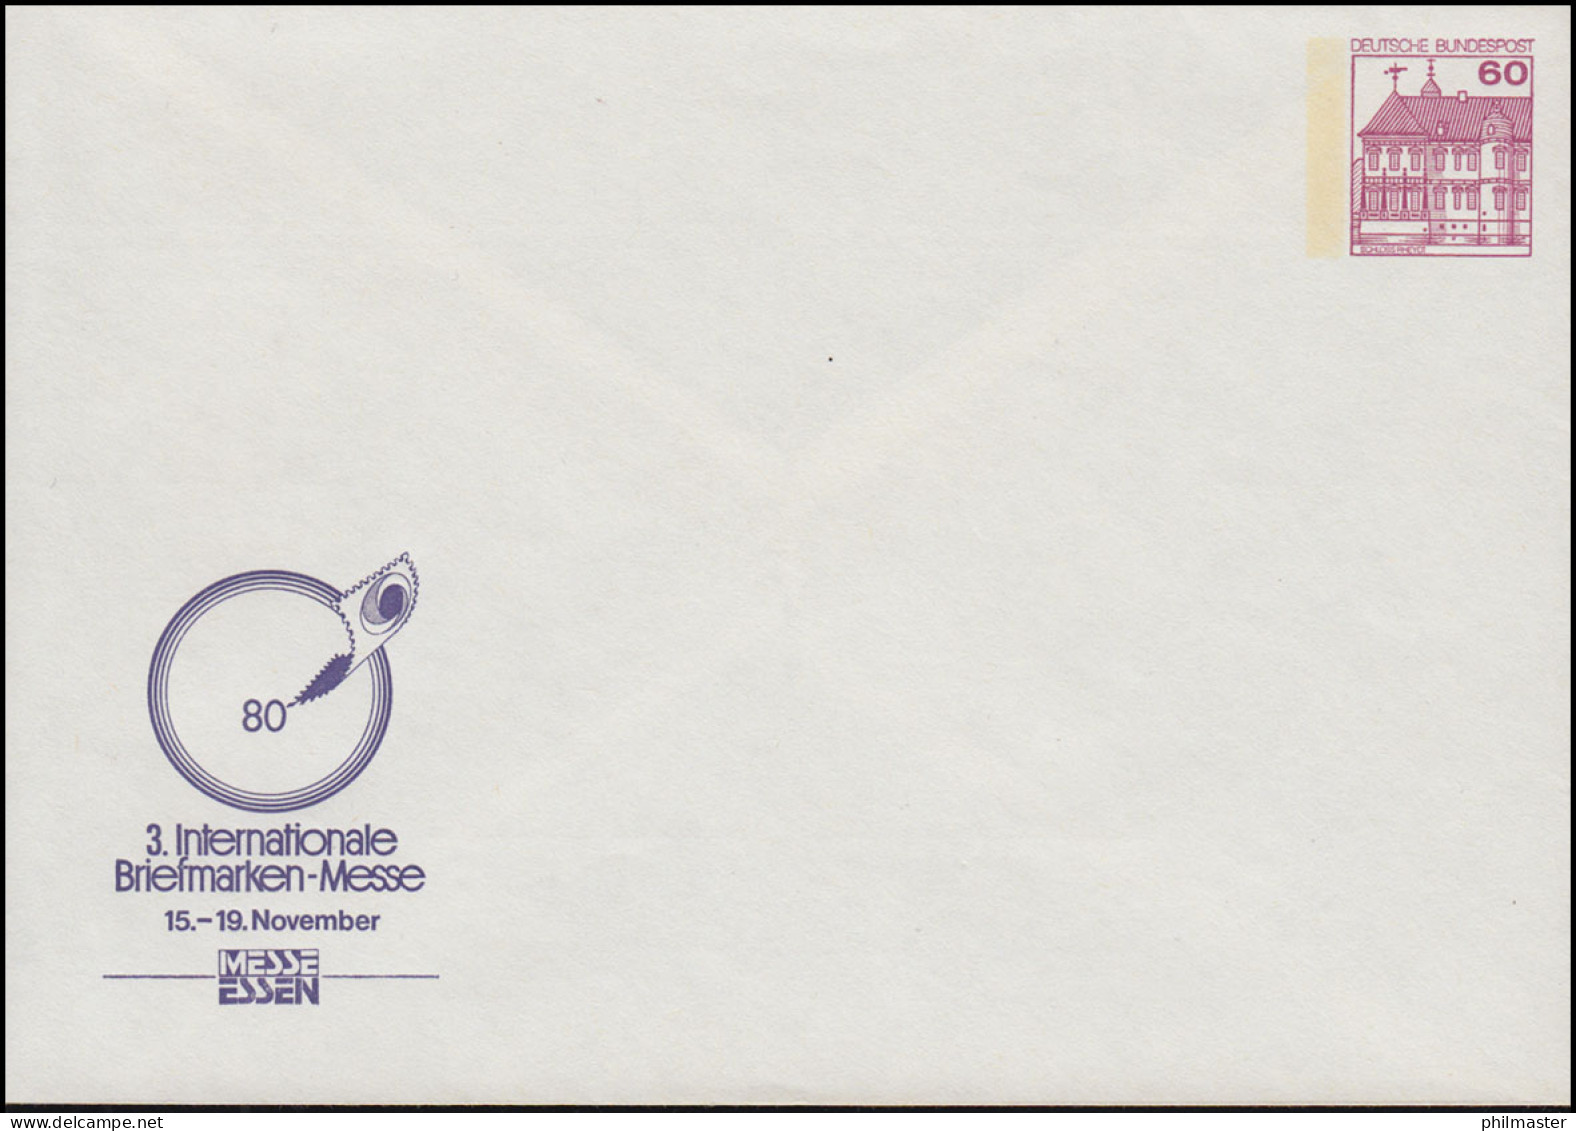 PP 115/65 BuS 60 Pf. 3. Briefmarken-Messe Essen 1980, Postfrisch ** - Private Covers - Mint